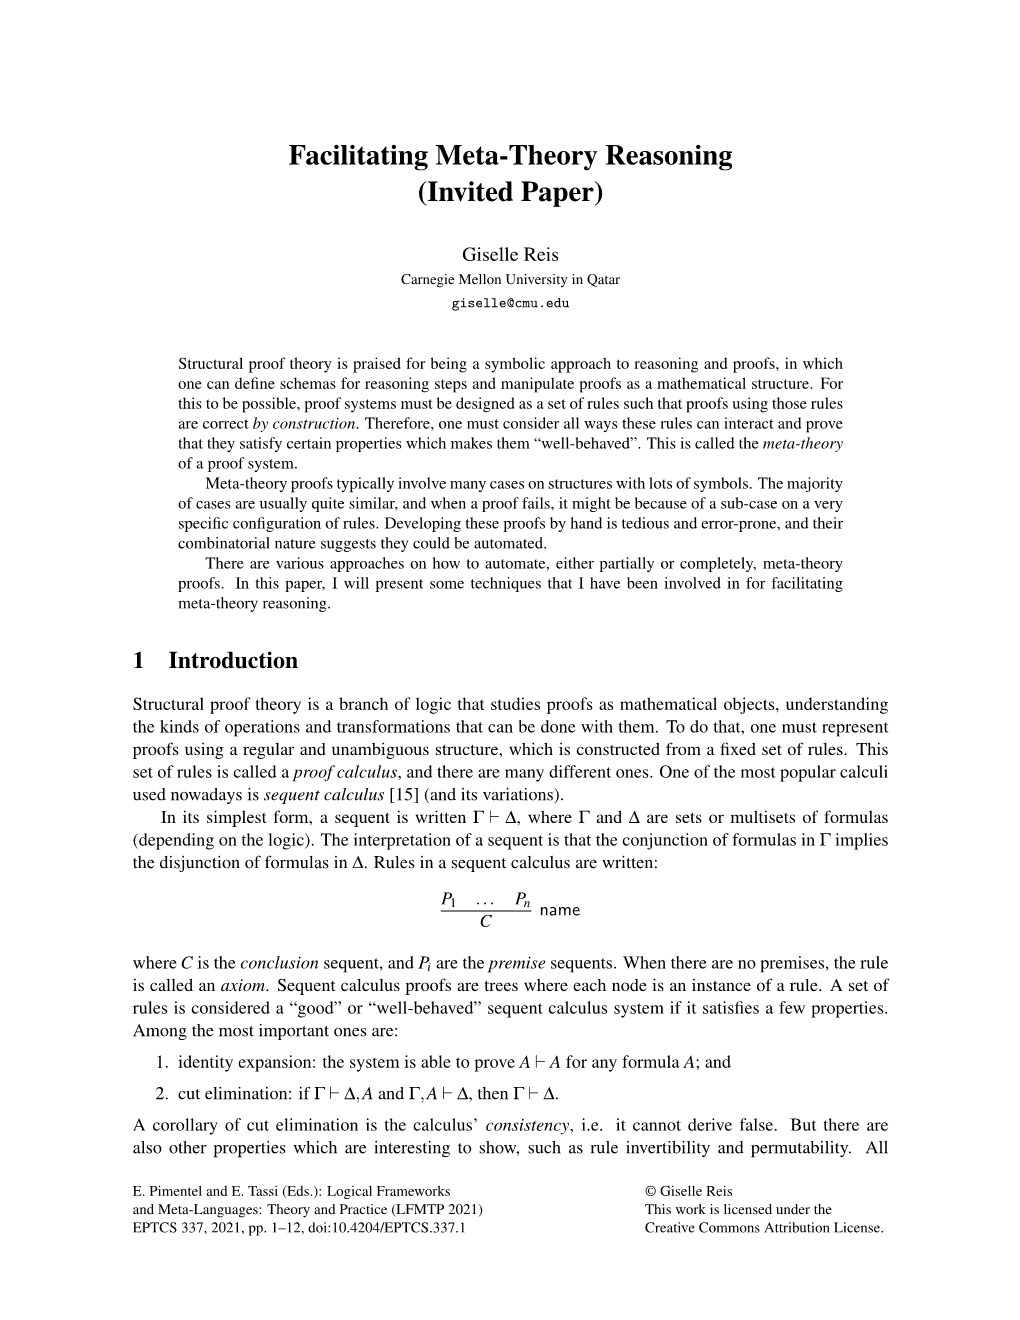 Facilitating Meta-Theory Reasoning (Invited Paper)